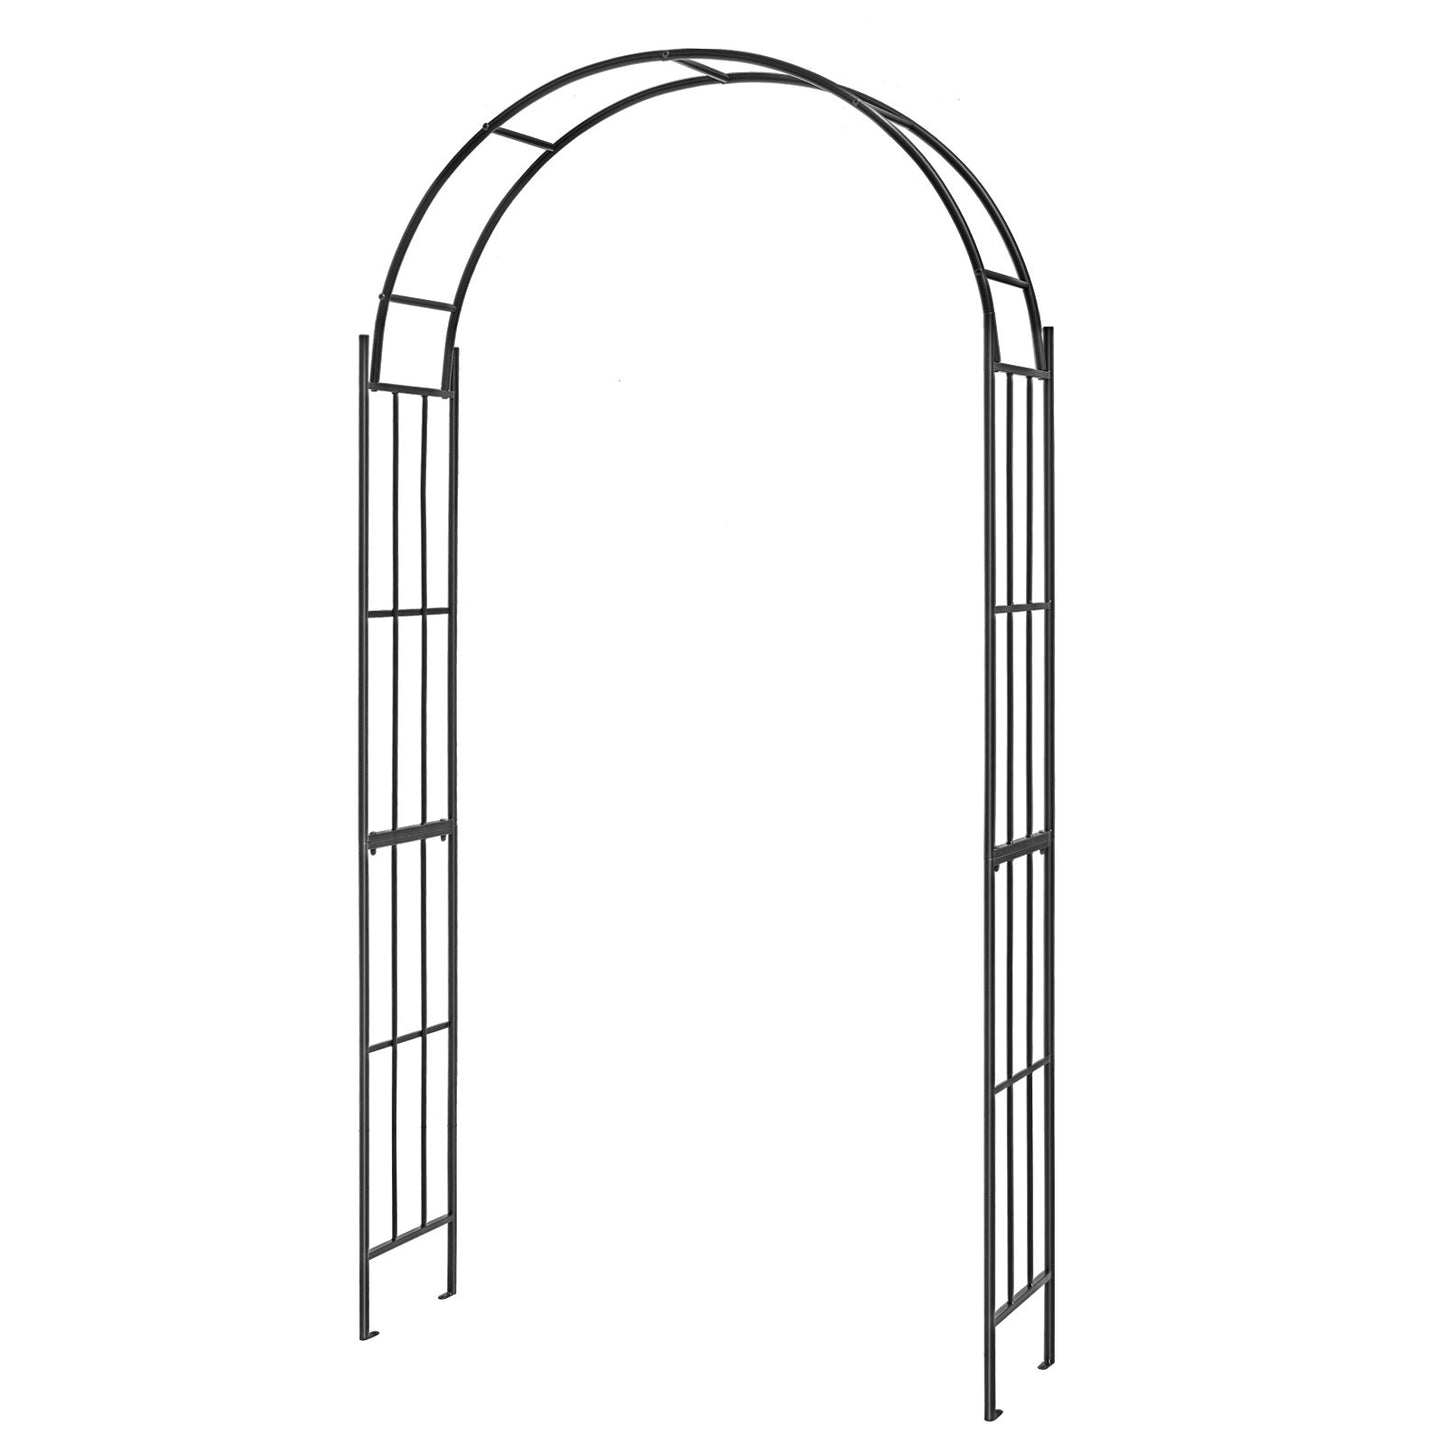 7.5 Feet Metal Garden Arch for Climbing Plants and Outdoor Garden Decor, Black - Gallery Canada